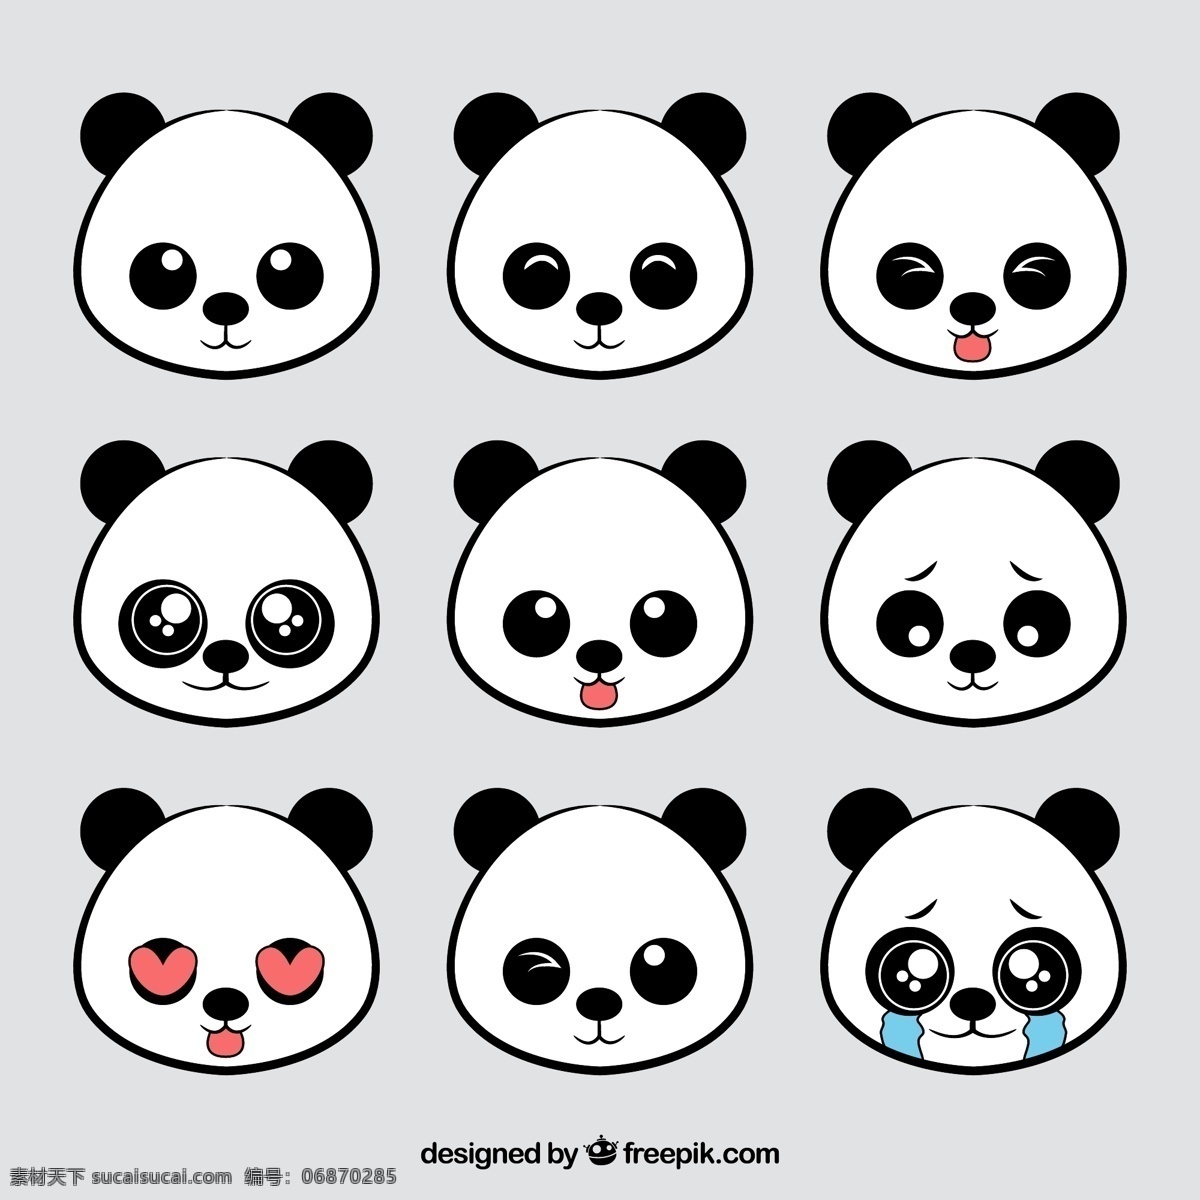 组 简约 风格 熊猫 可爱 卡通 卡哇伊 矢量素材 动物 小动物 创意设计 创意 元素 生物元素 动物元素